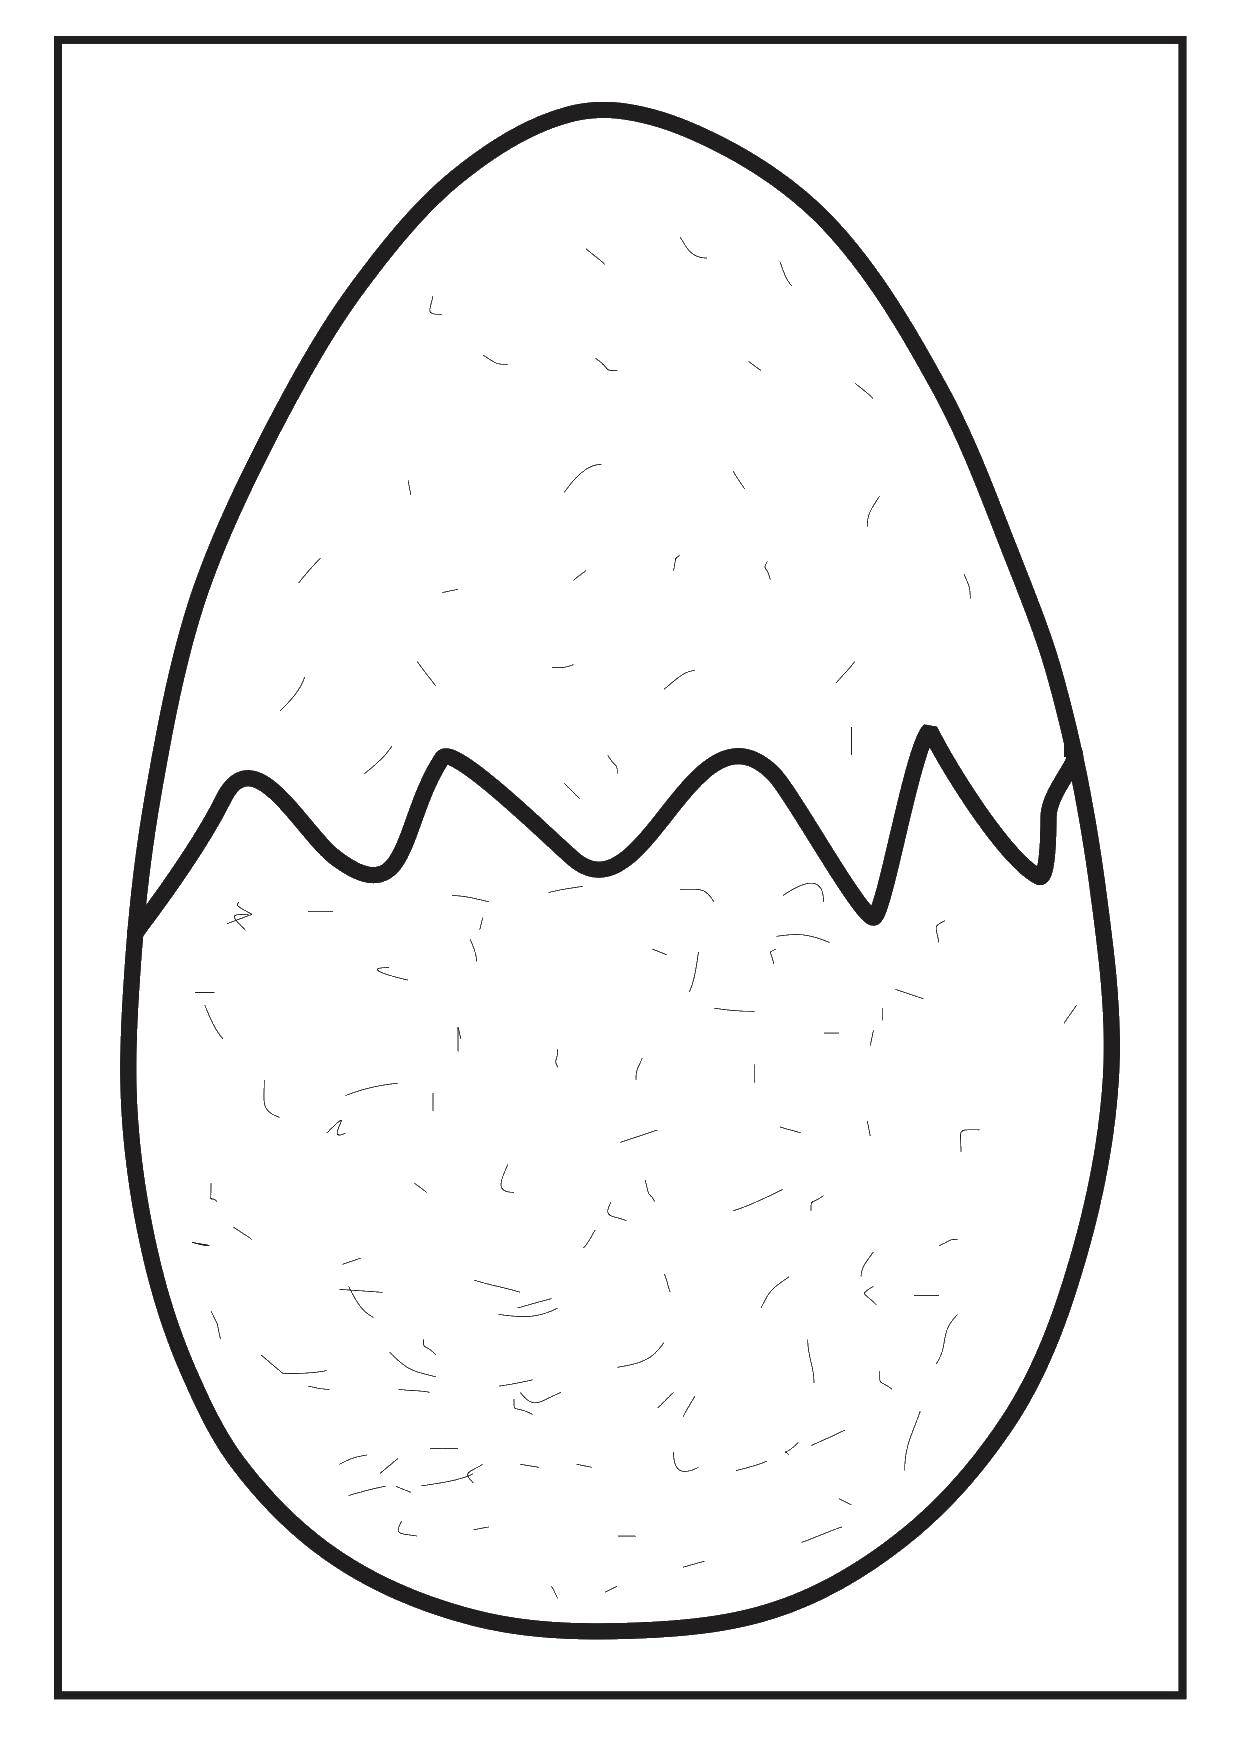 Выберите правильное яйцо и проколите иголкой: как подготовить яйца к покраске перед Пасхой